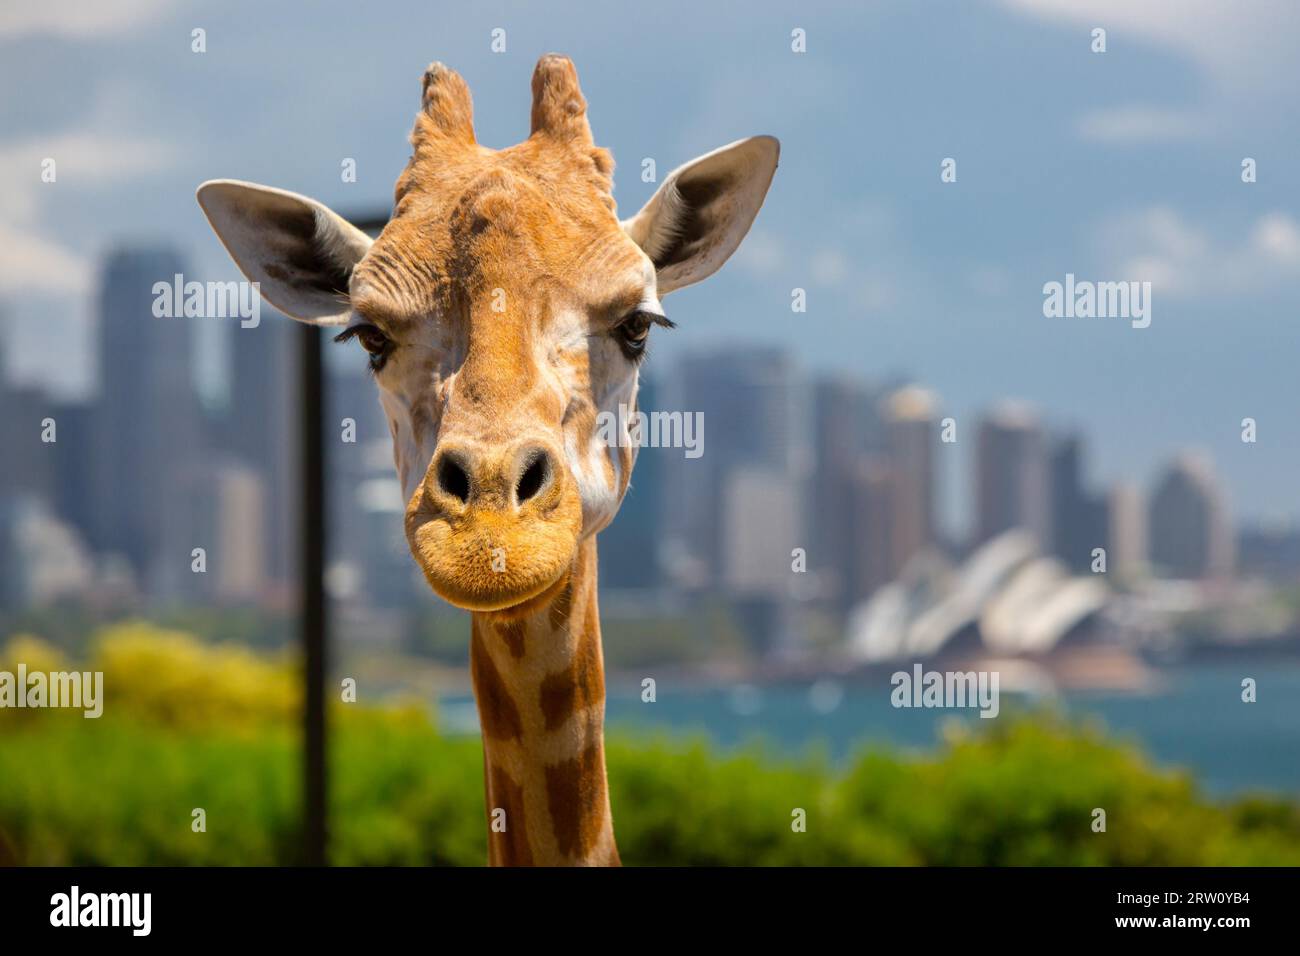 Le giraffe al Taronga Zoo si affacciano sul porto e sullo skyline di Sydney in una chiara estate#39, il giorno di Sydney, Australia Foto Stock